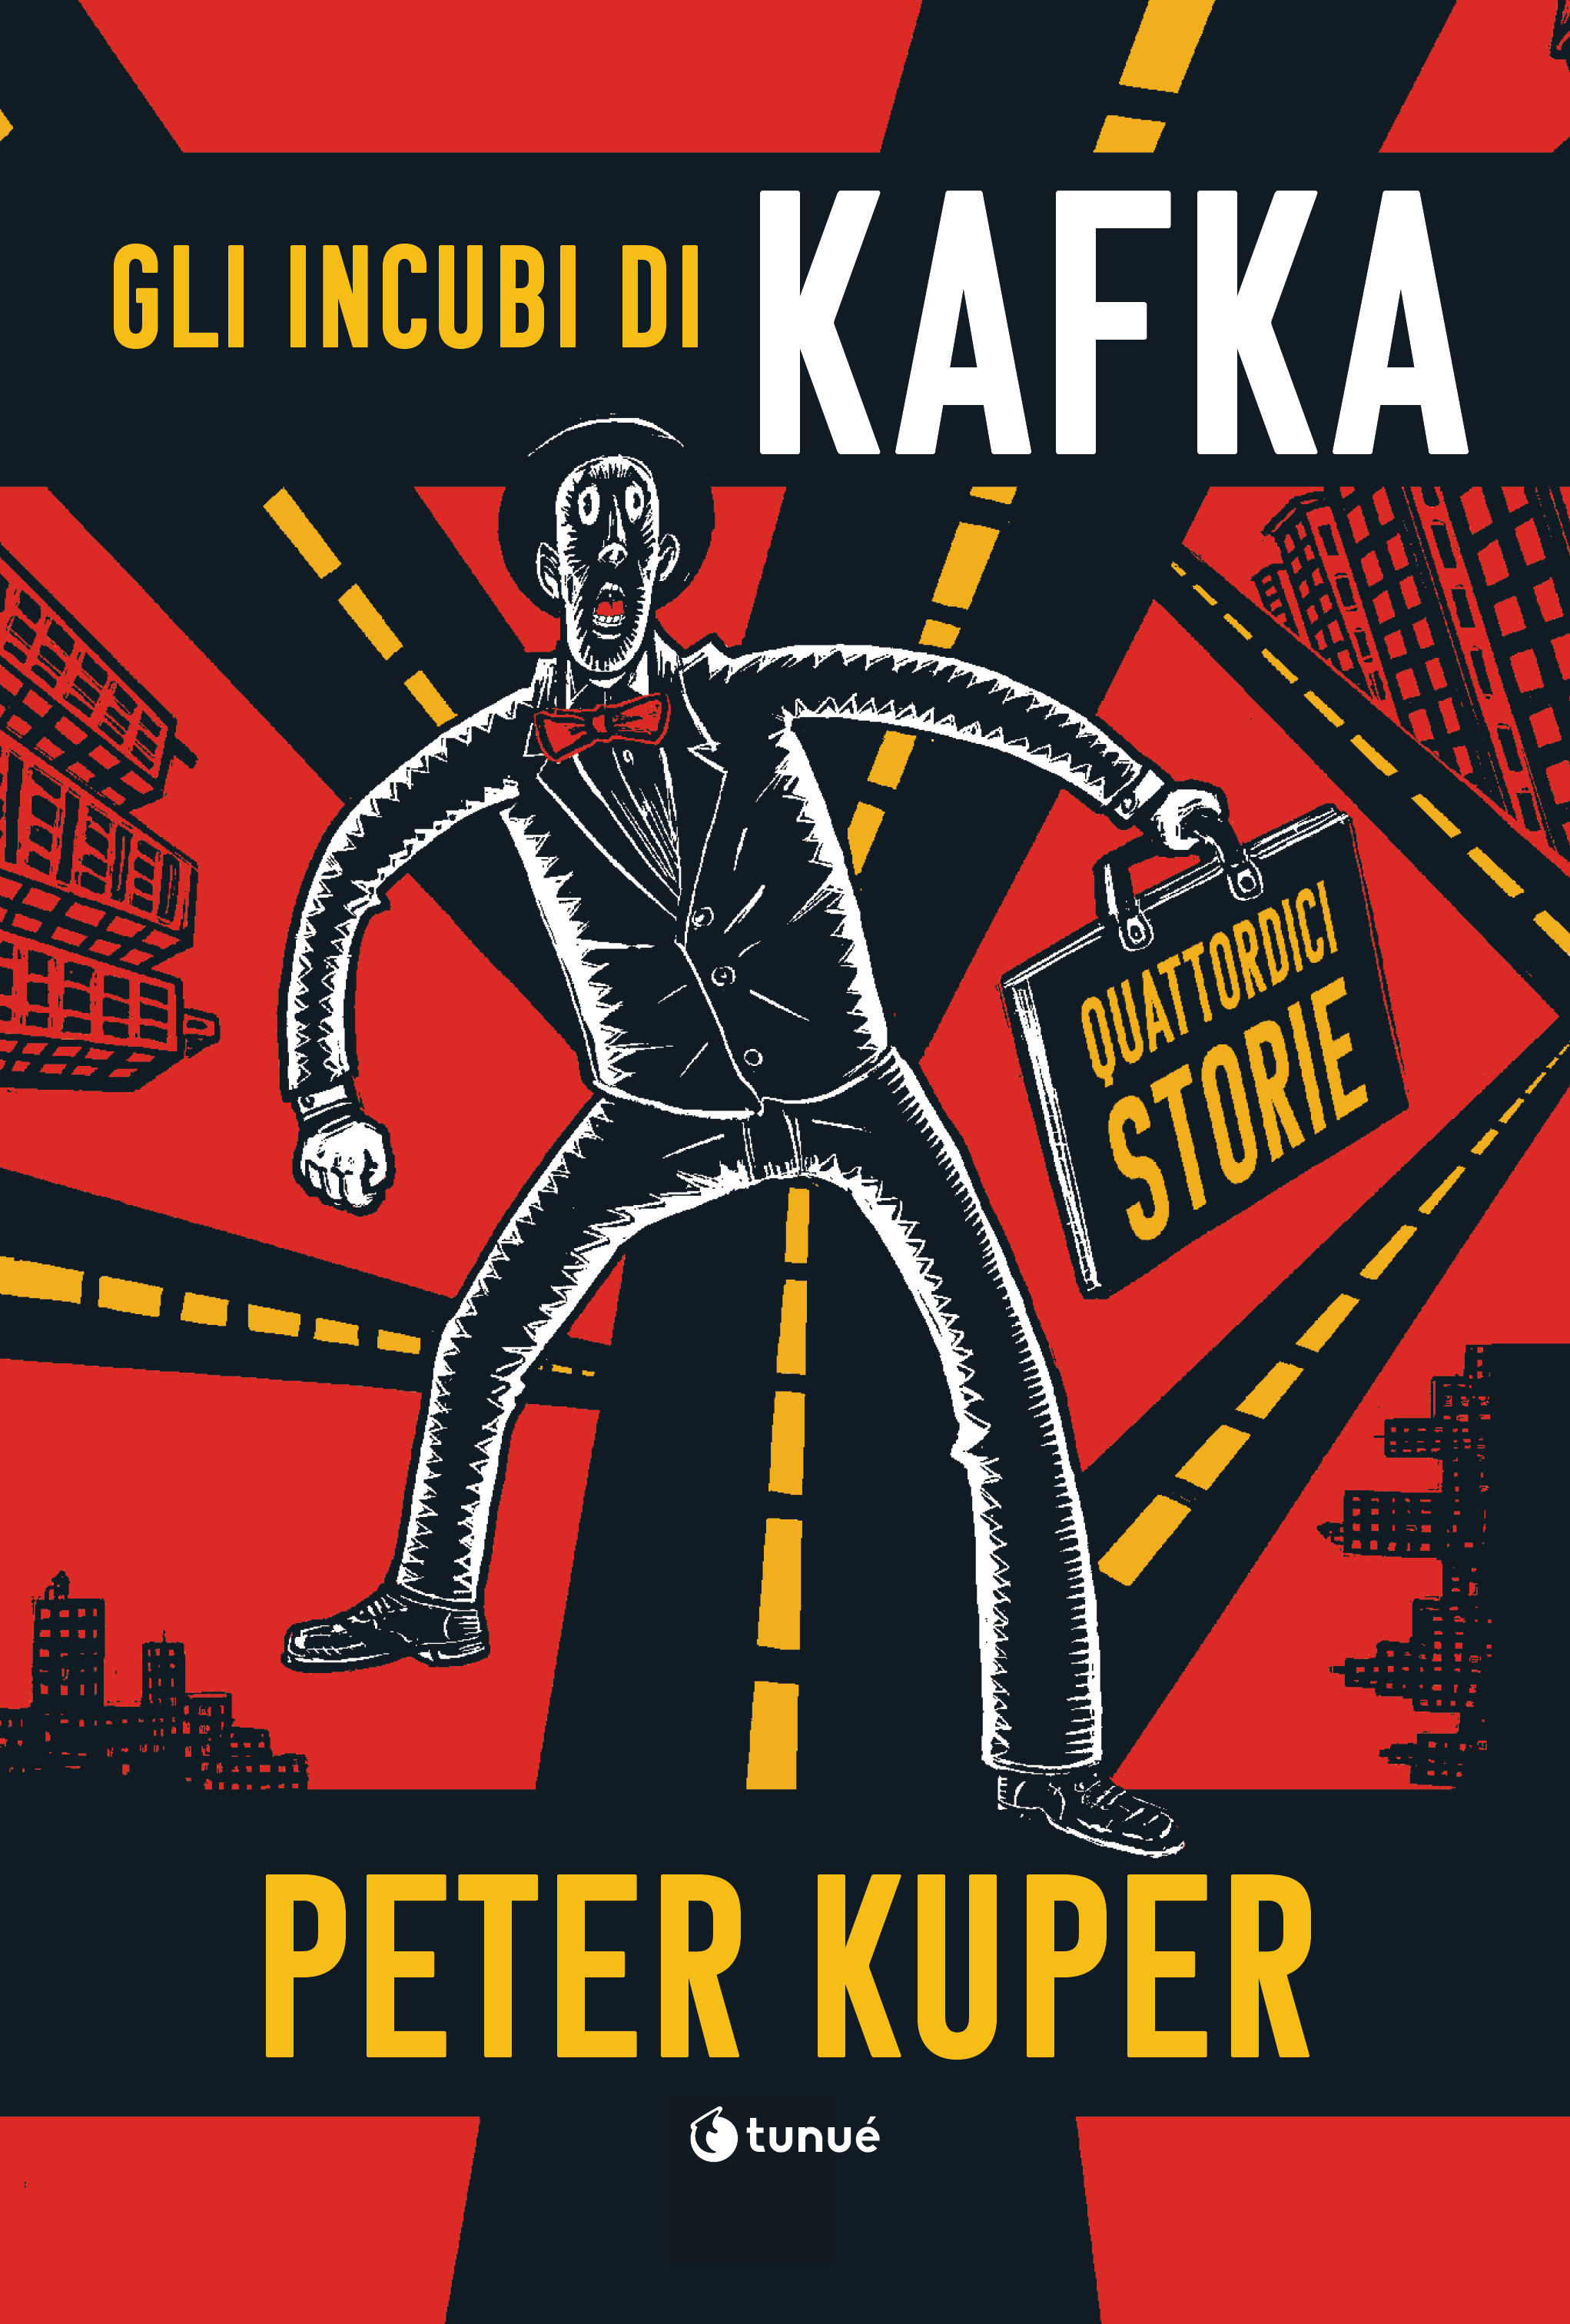 Copertina del fumetto Gli Incubi di Kafka di Tunué - nerdface